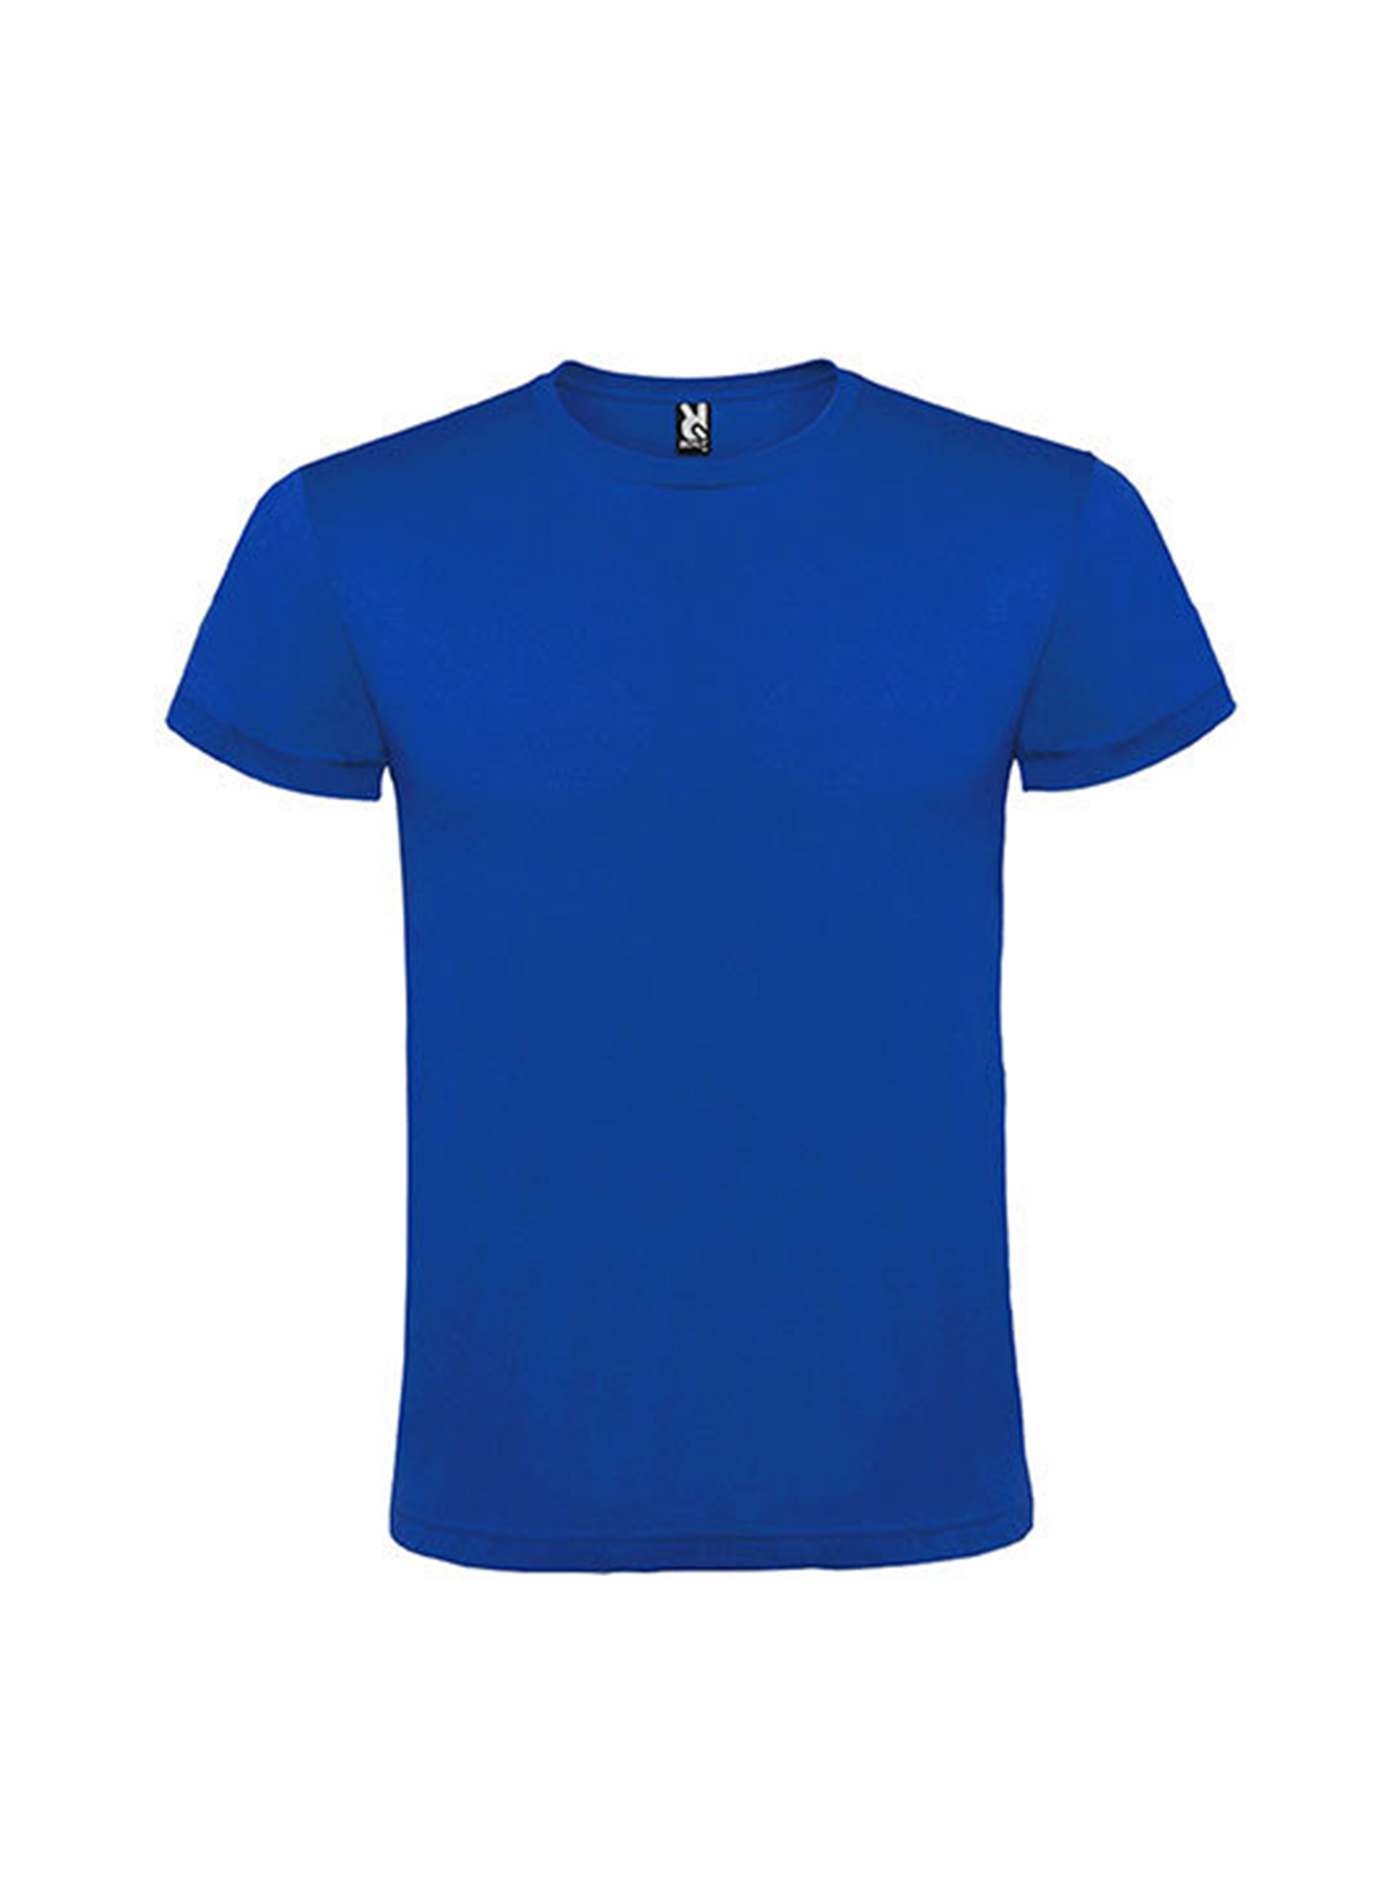 Pánské tričko Roly Atomic - Královská modrá S